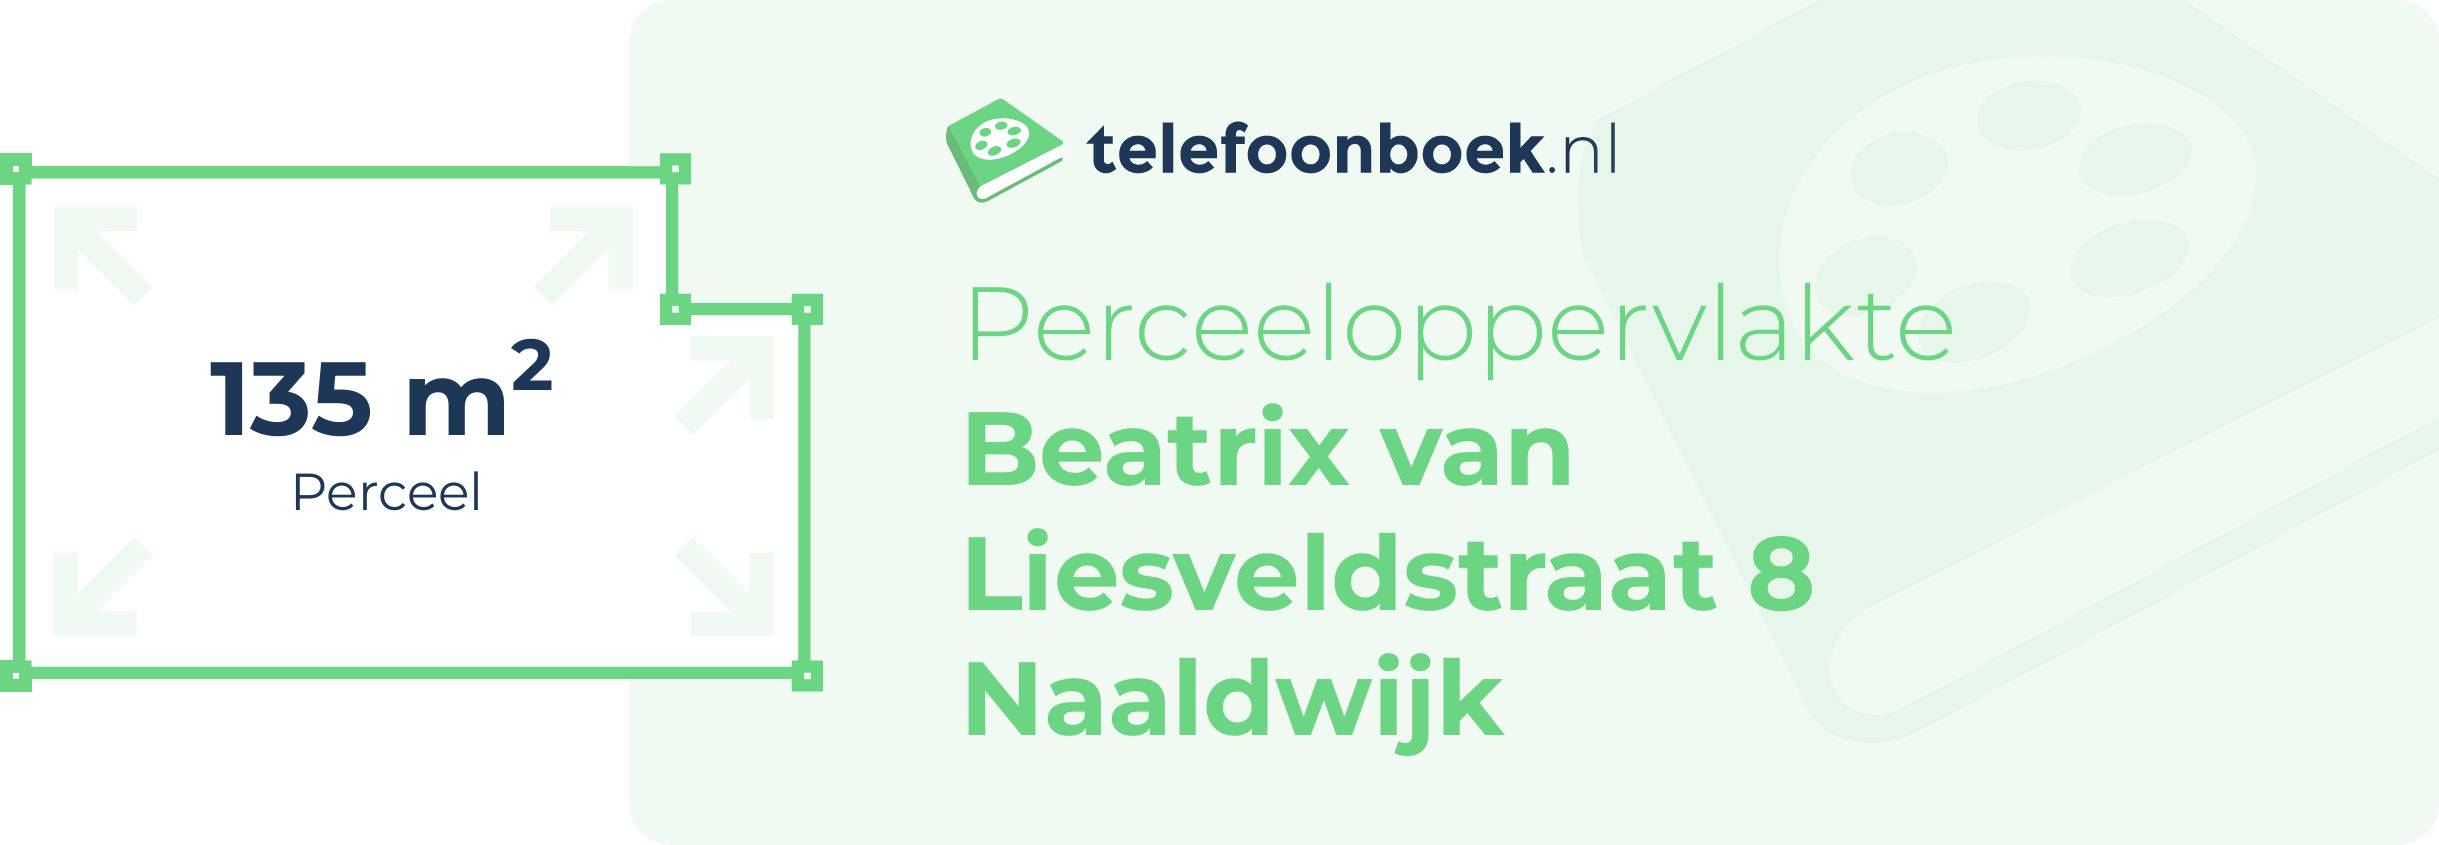 Perceeloppervlakte Beatrix Van Liesveldstraat 8 Naaldwijk